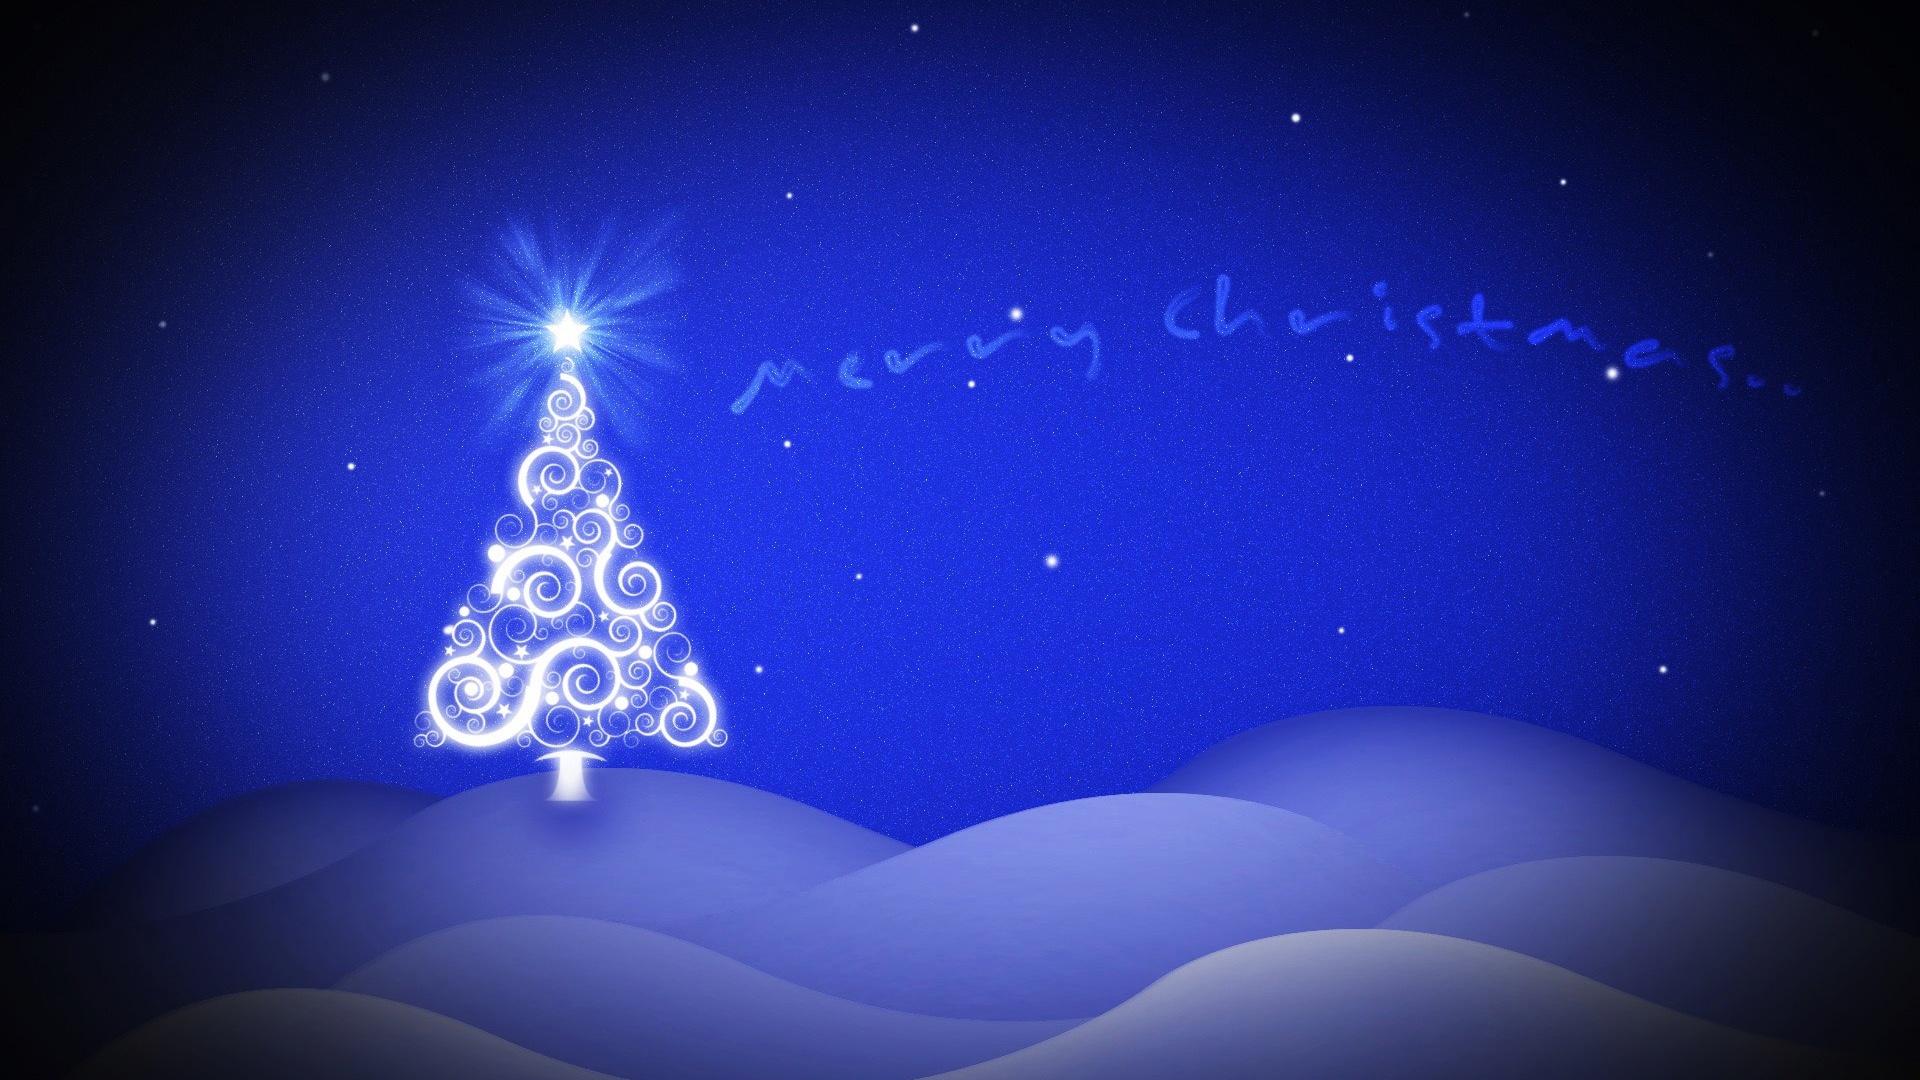 Tổng hợp ảnh cây thông Noel đẹp nhất | Christmas activities, Christmas  decorations, Christmas tree